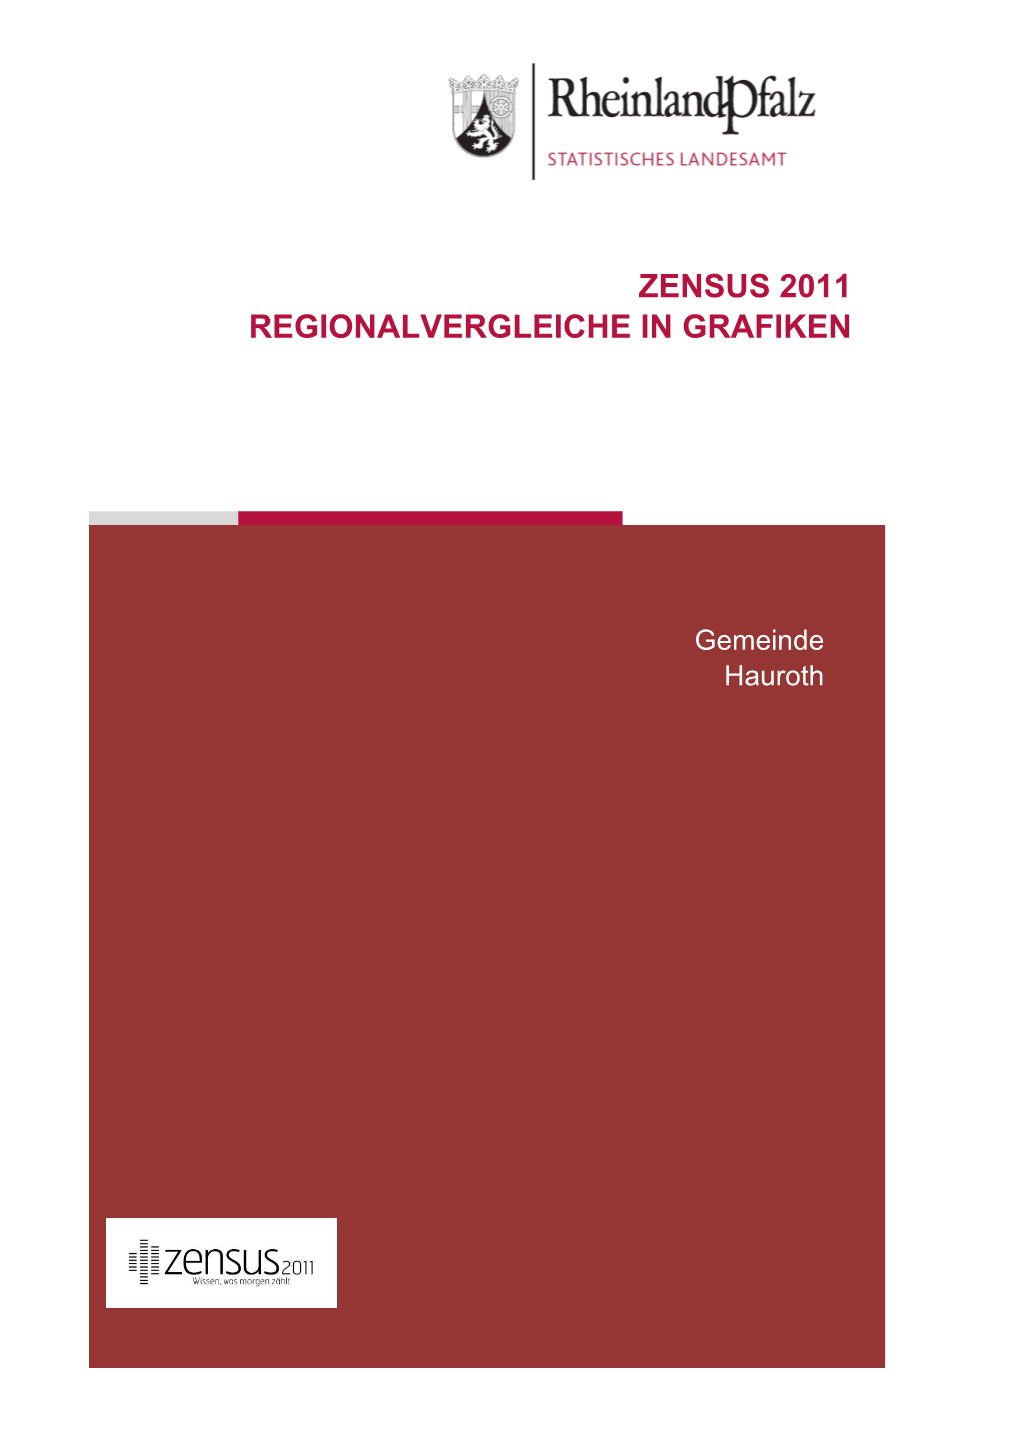 Regionalvergleiche in Grafiken Am 9. Mai 2011, Hauroth